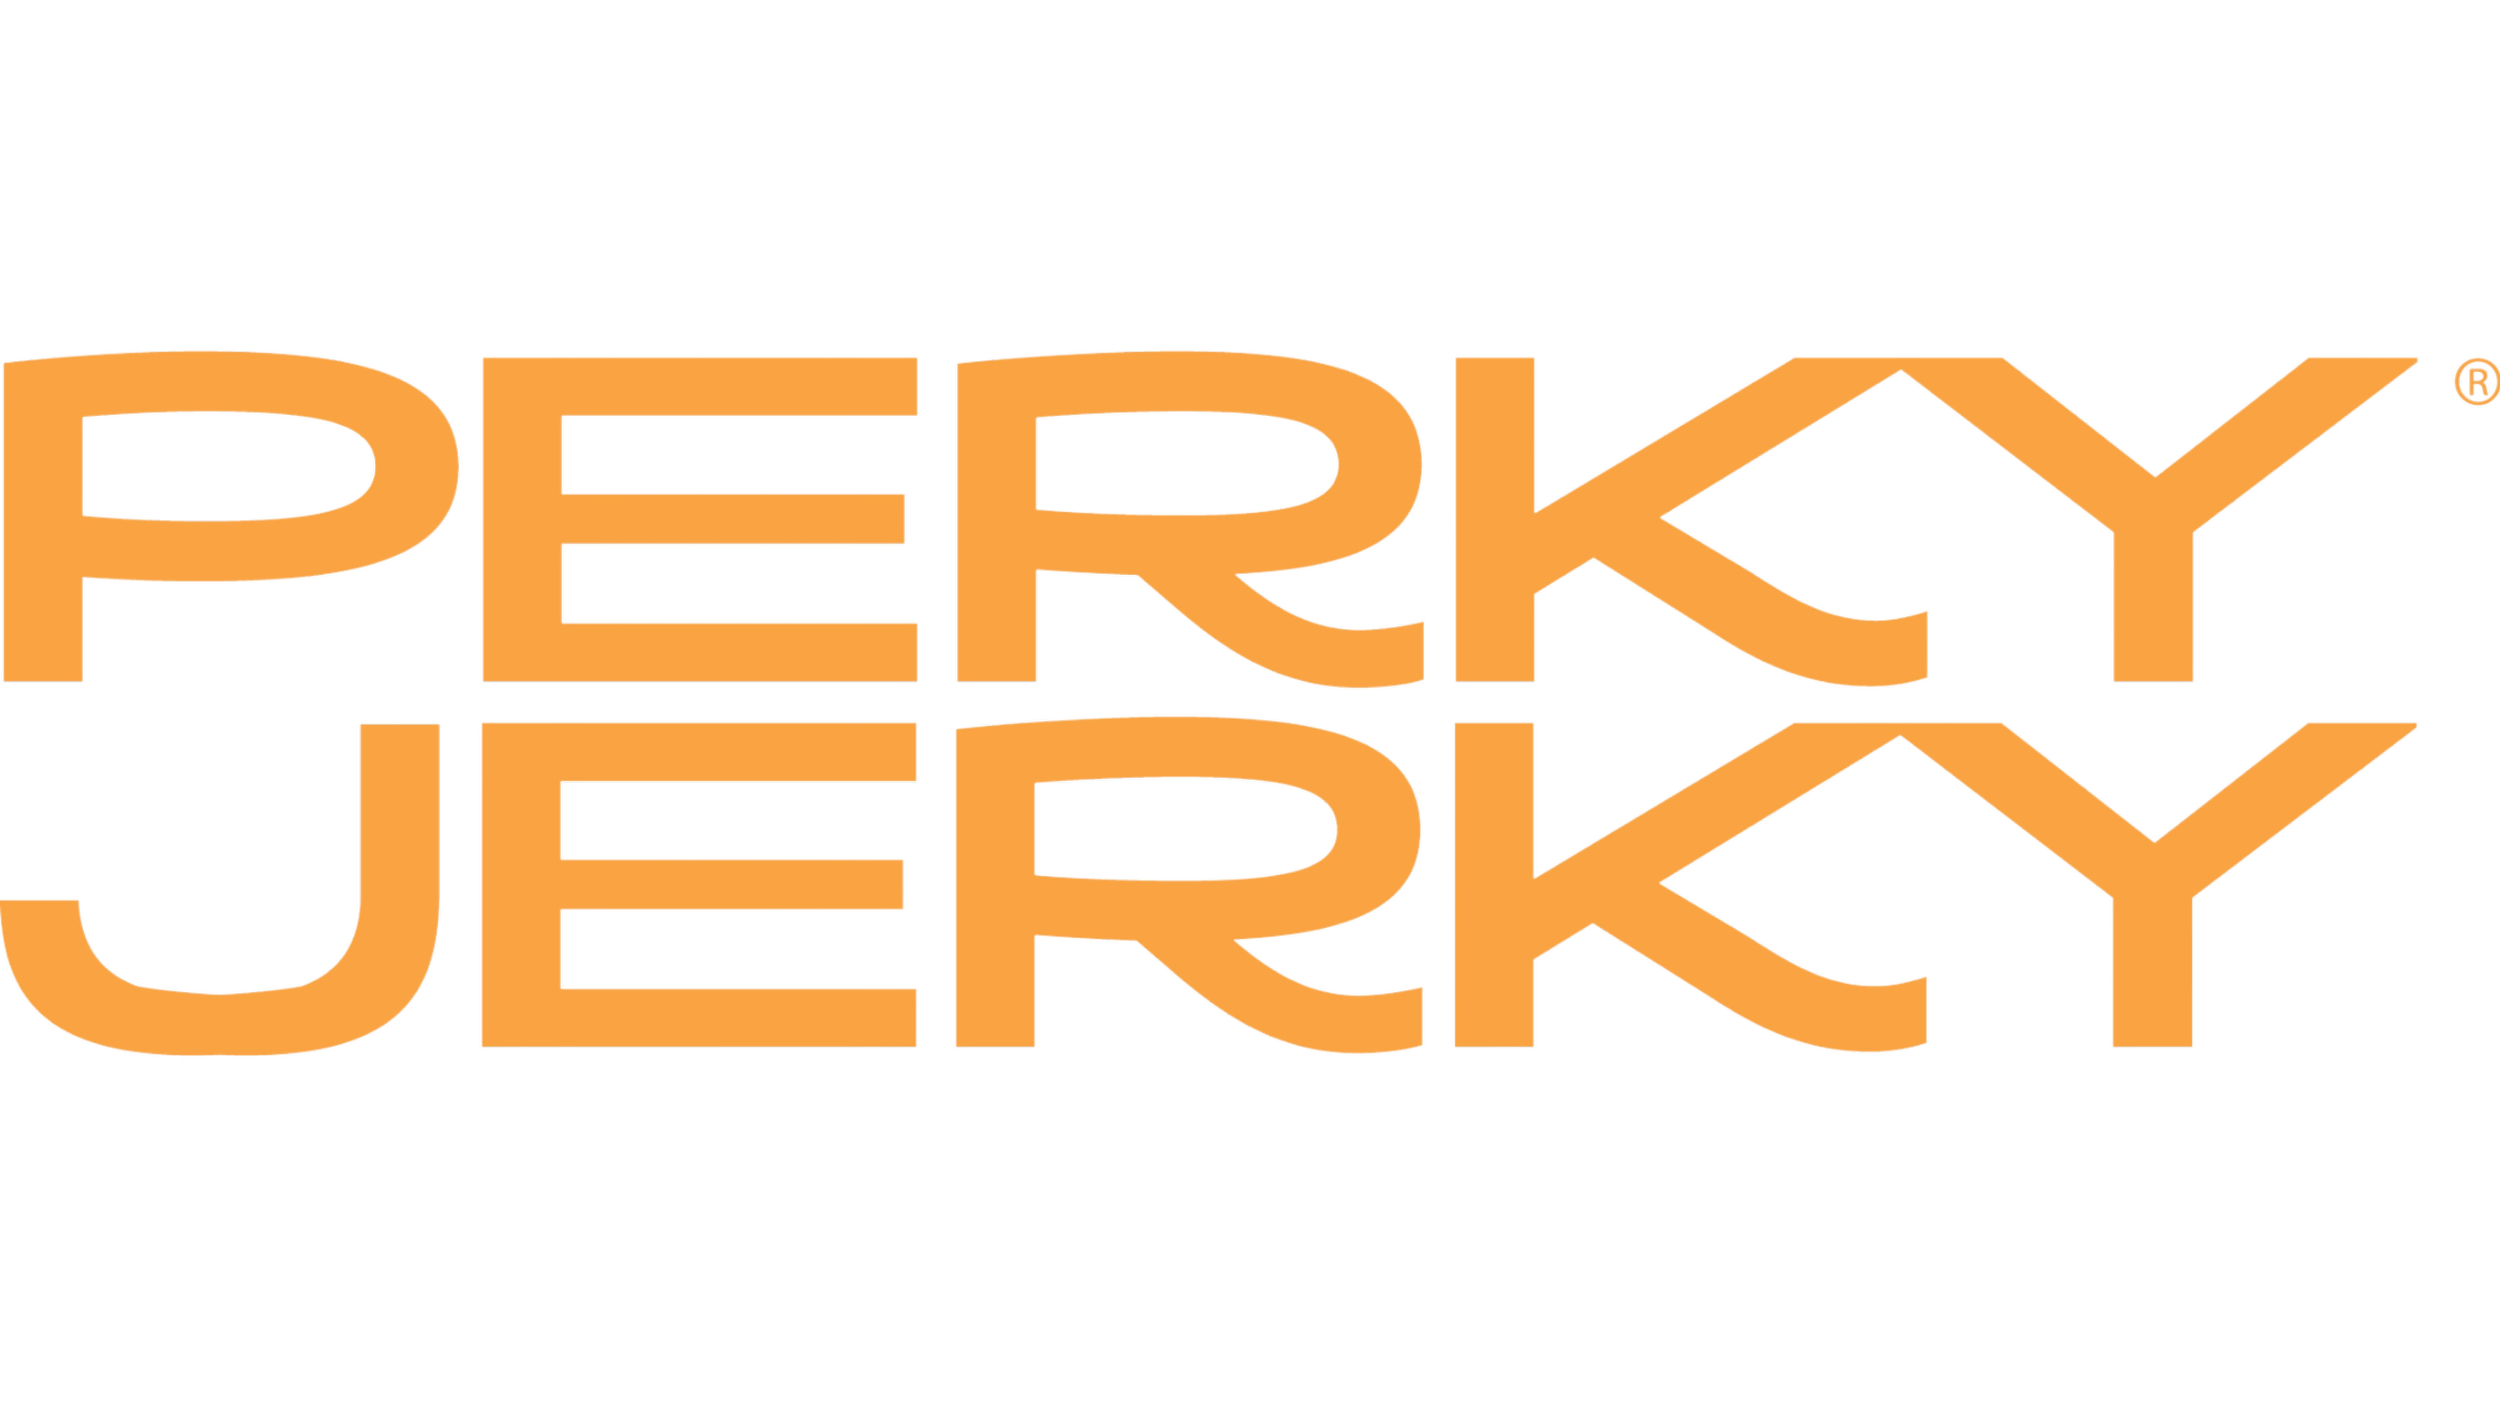 Perky Jerky logo (1).png